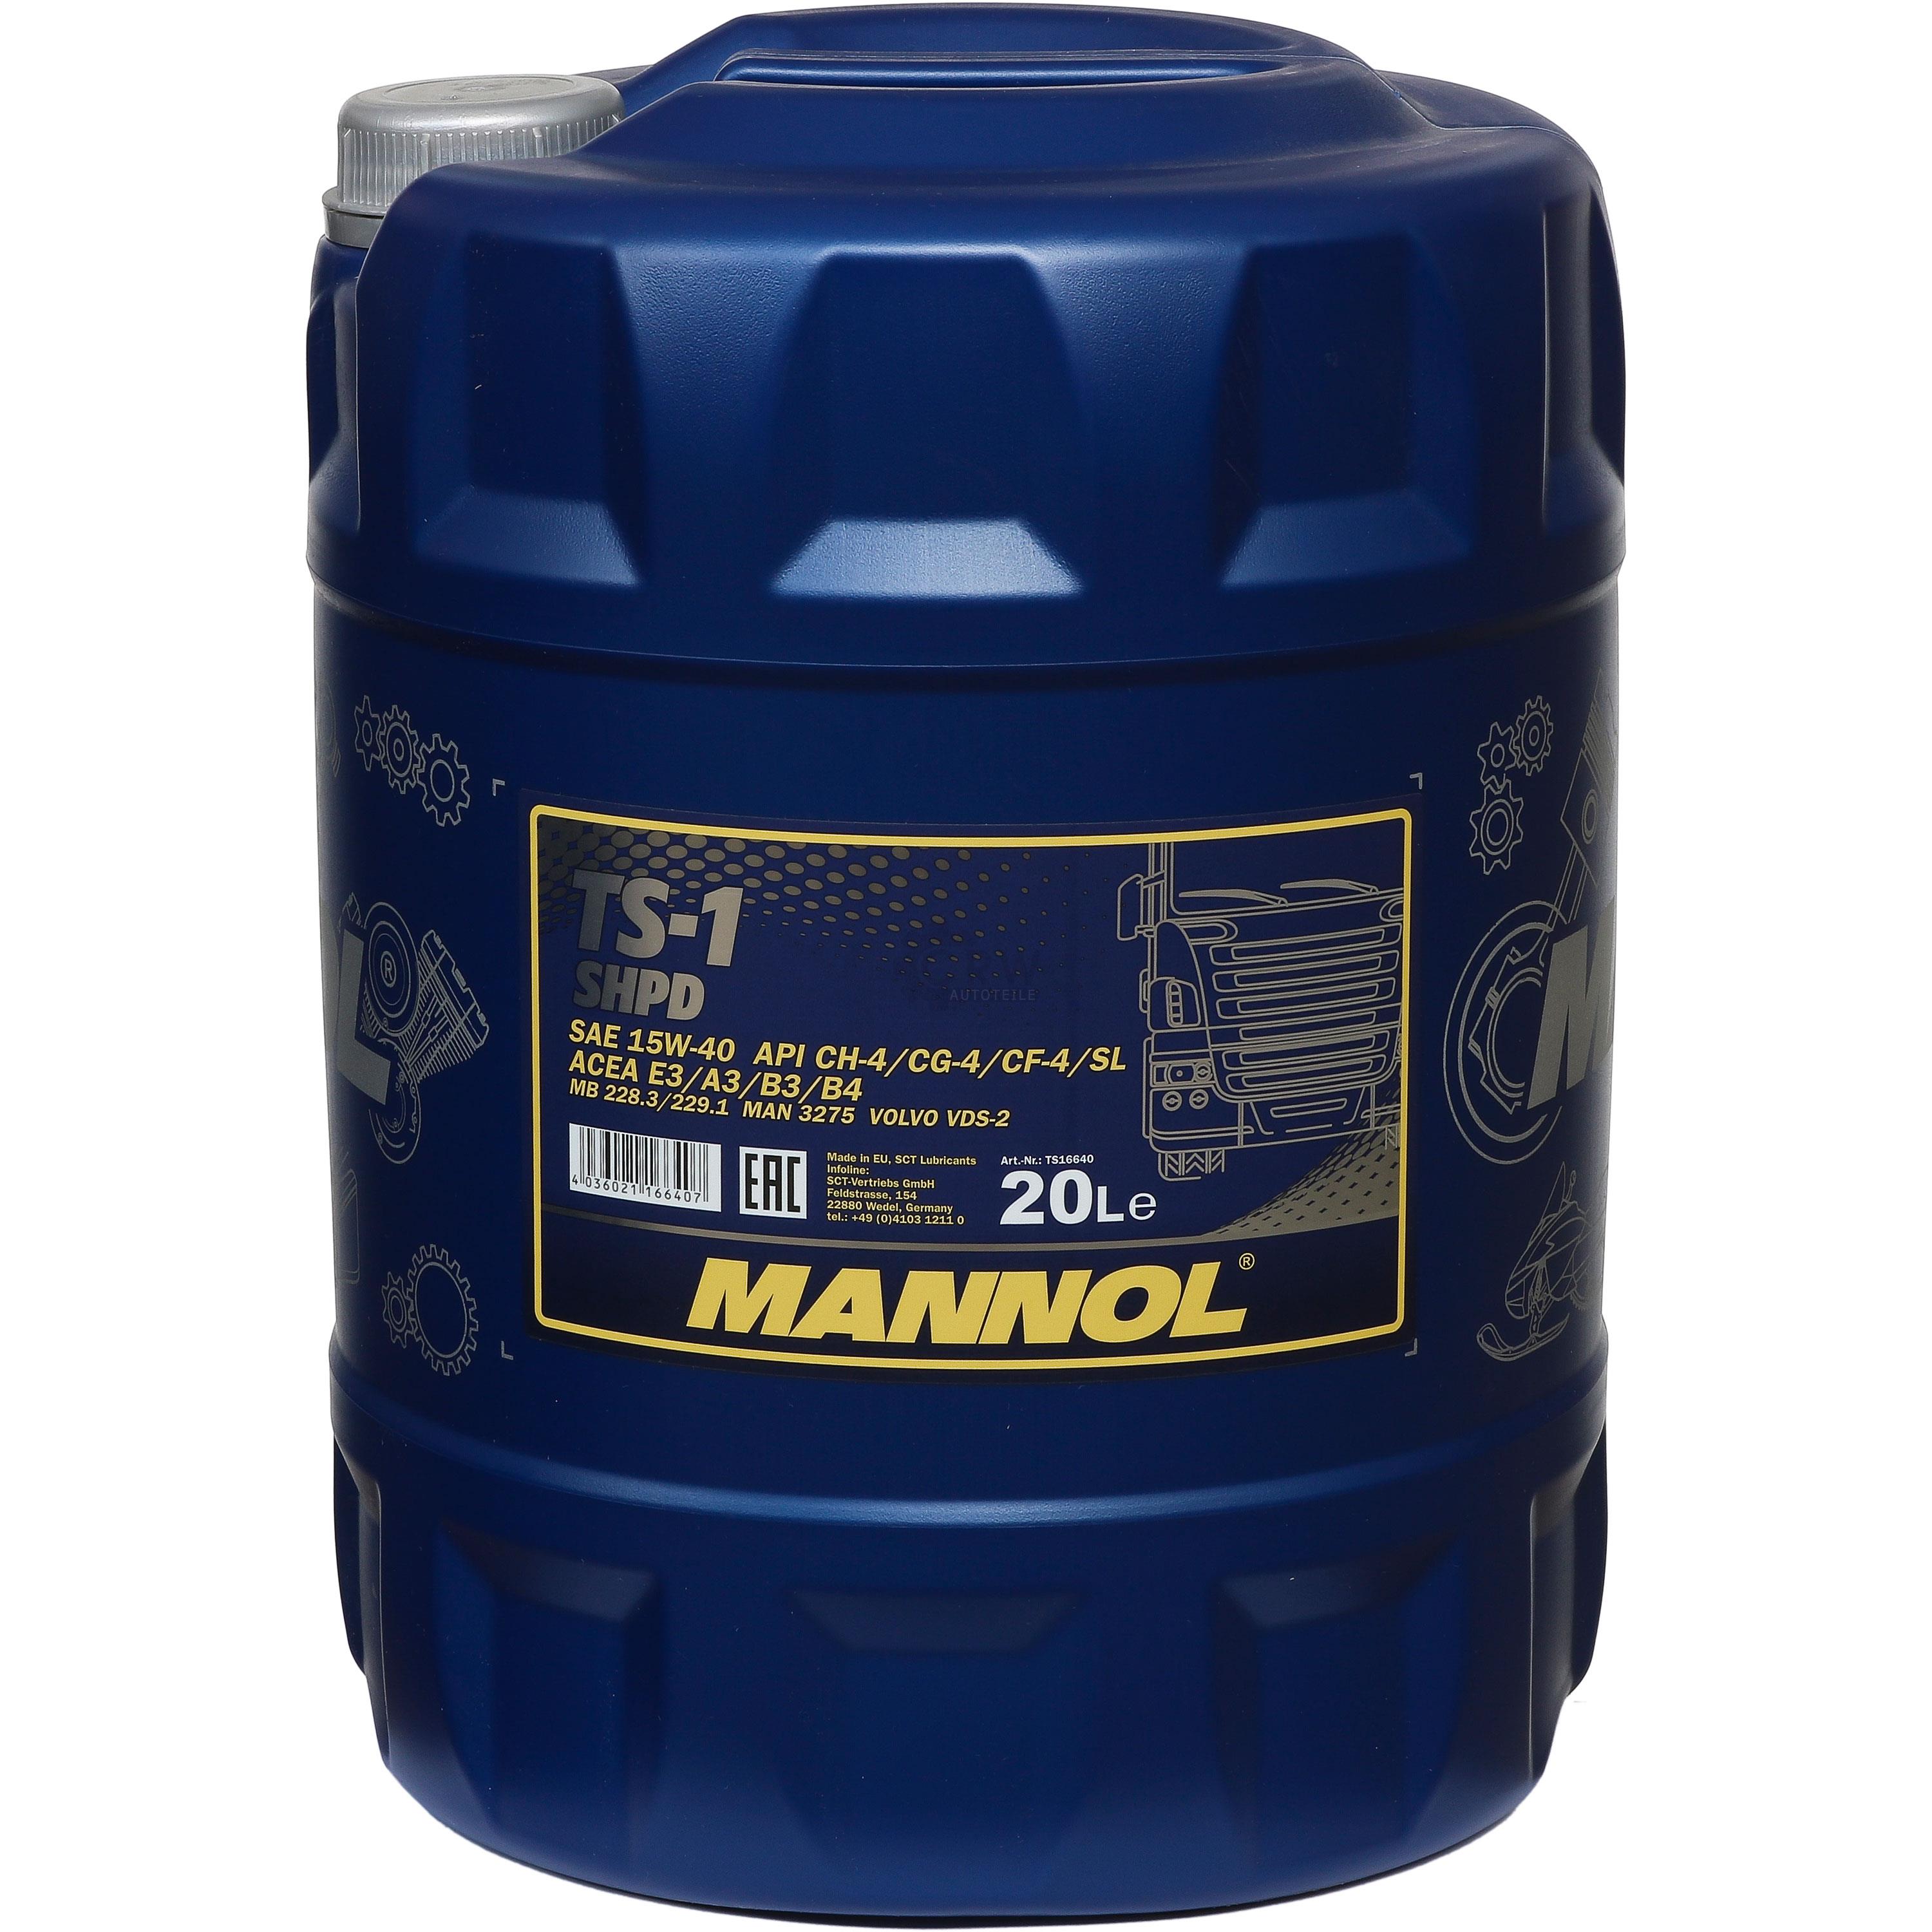 20 Liter Orignal MANNOL Motoröl TS-1 SHPD 15W-40 API CH-4/CG-4/CF-4/SL